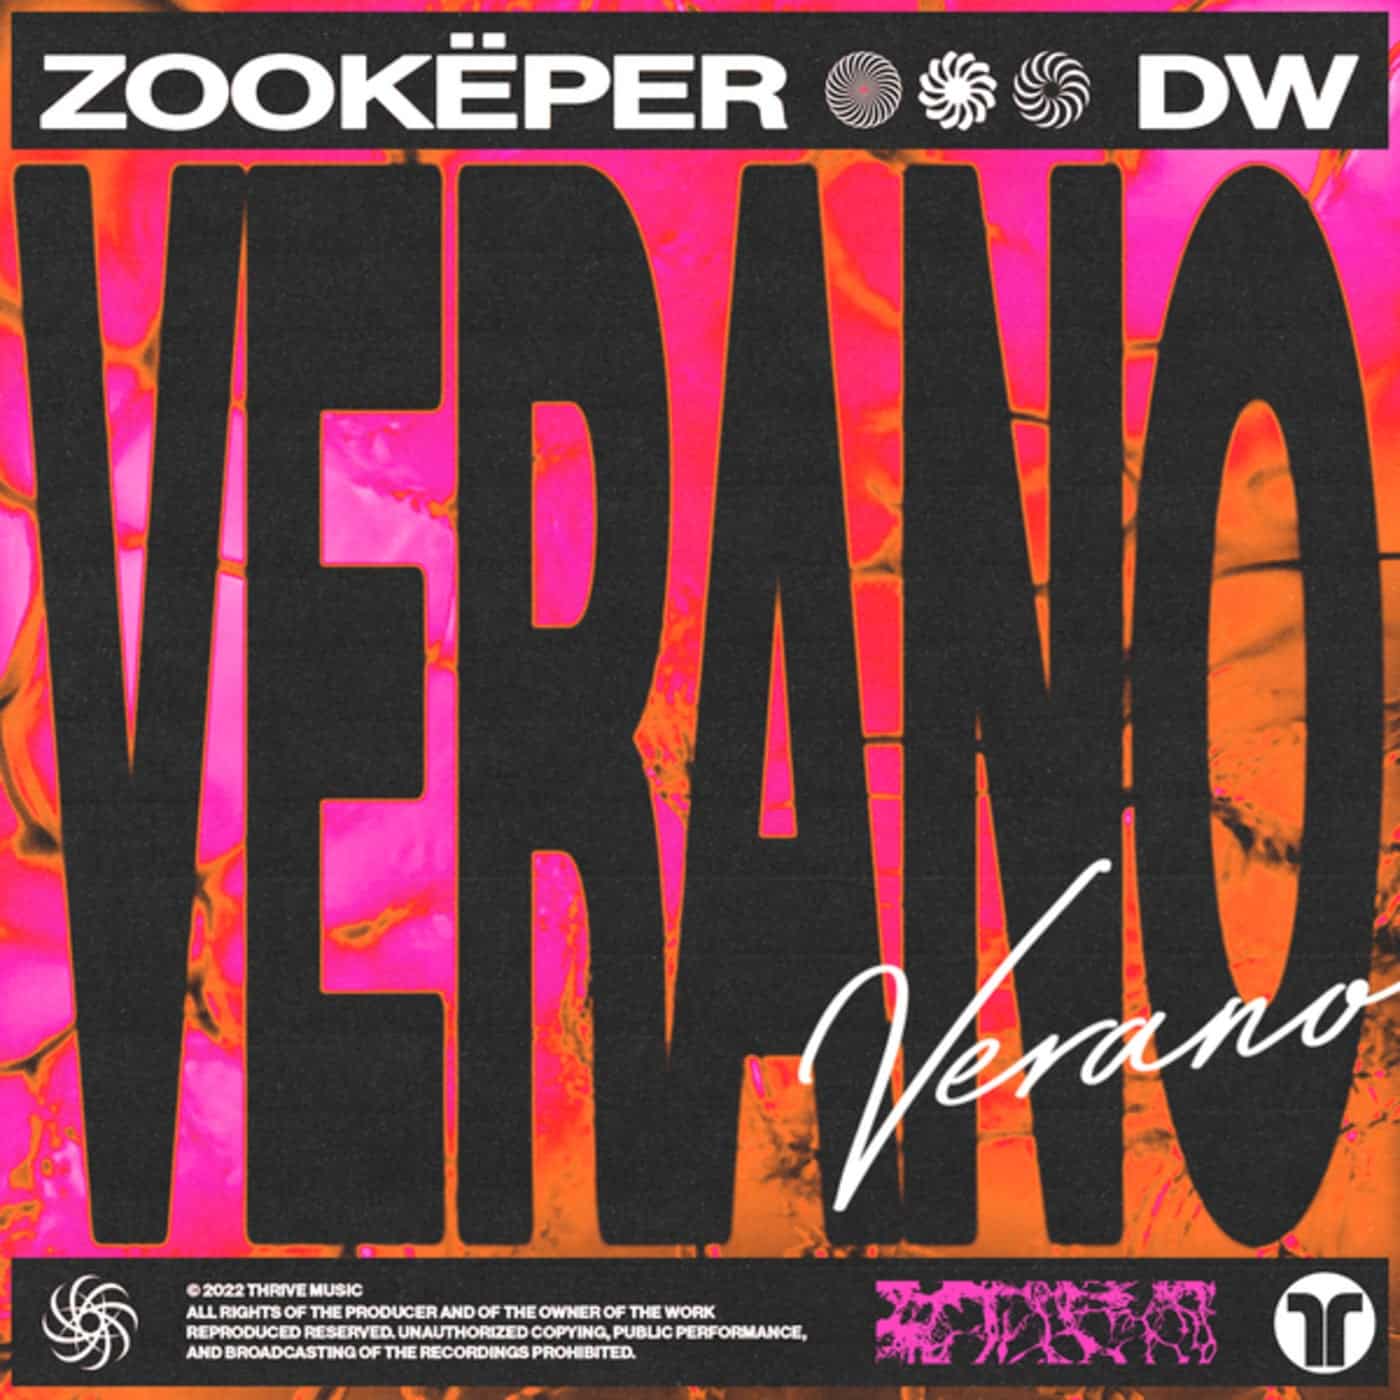 image cover: DW, Zookëper - Verano / 78139